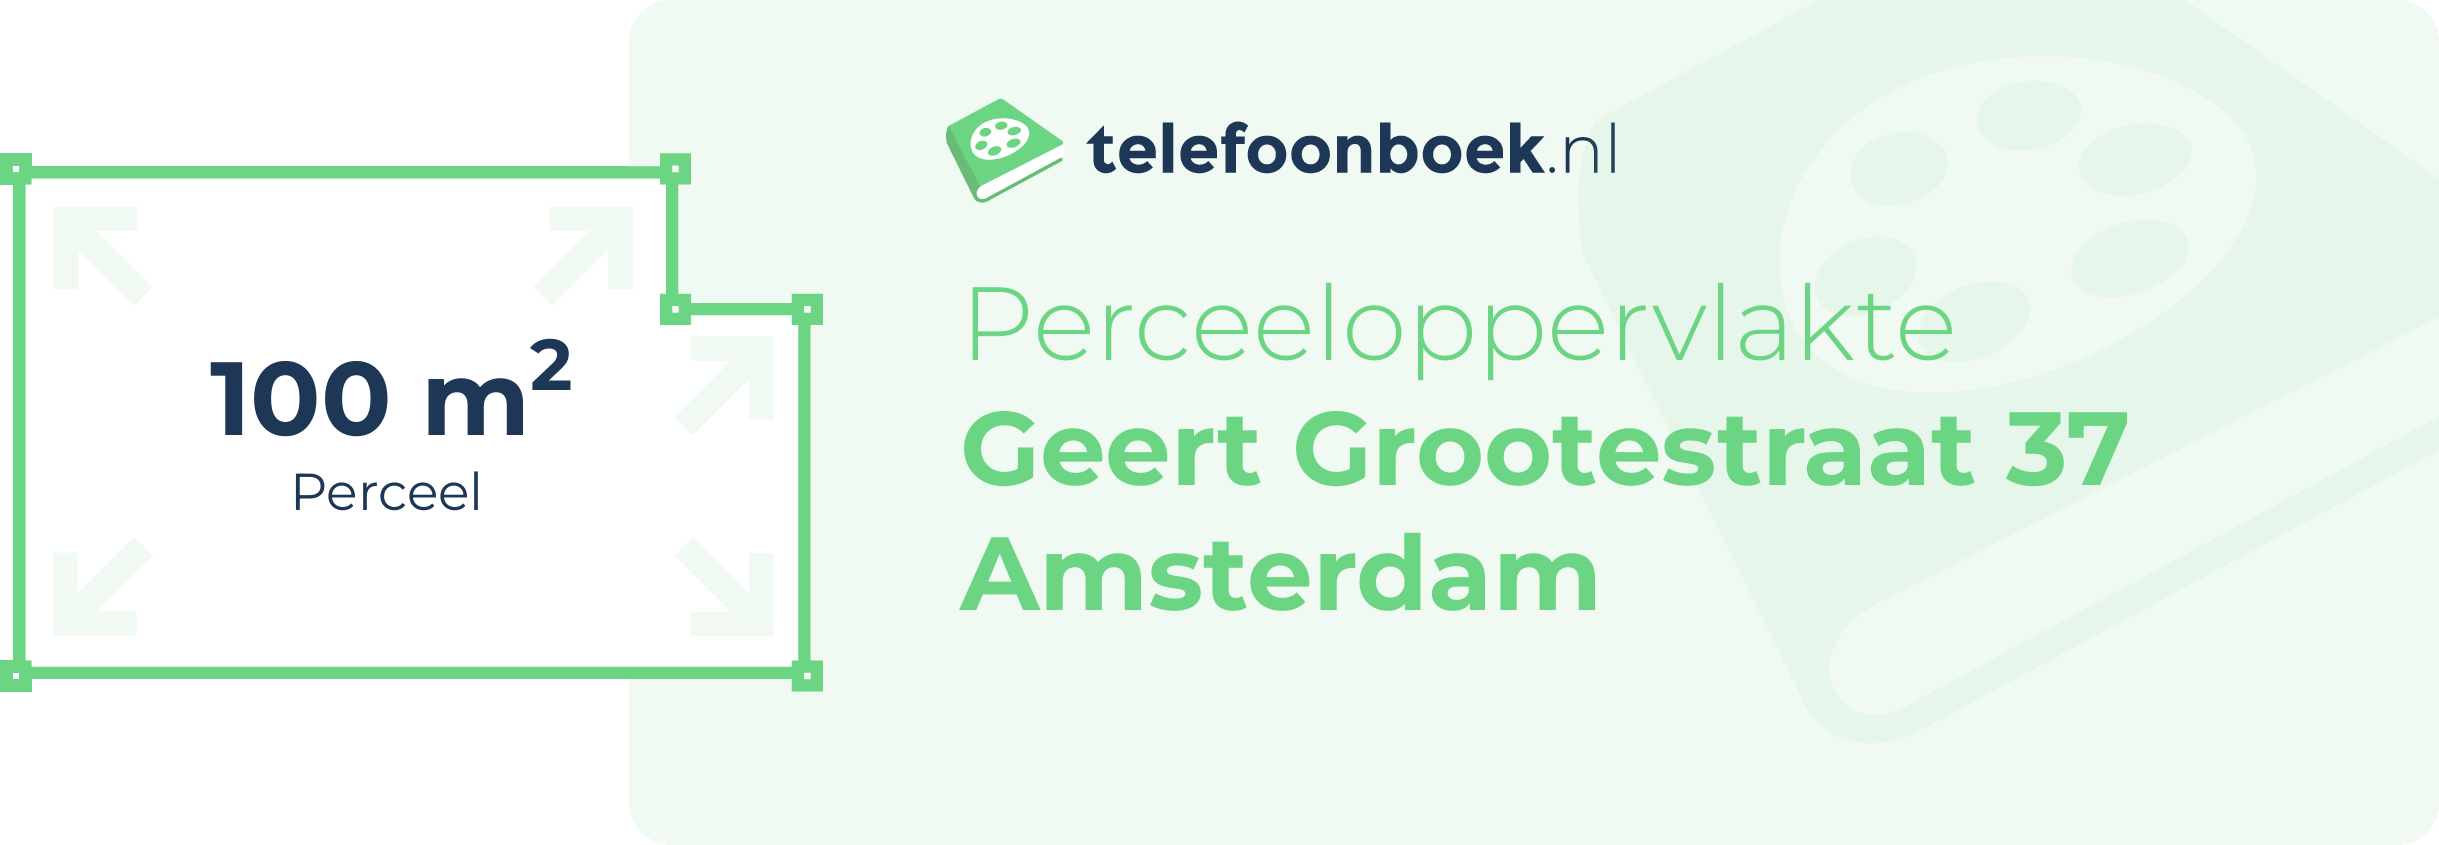 Perceeloppervlakte Geert Grootestraat 37 Amsterdam